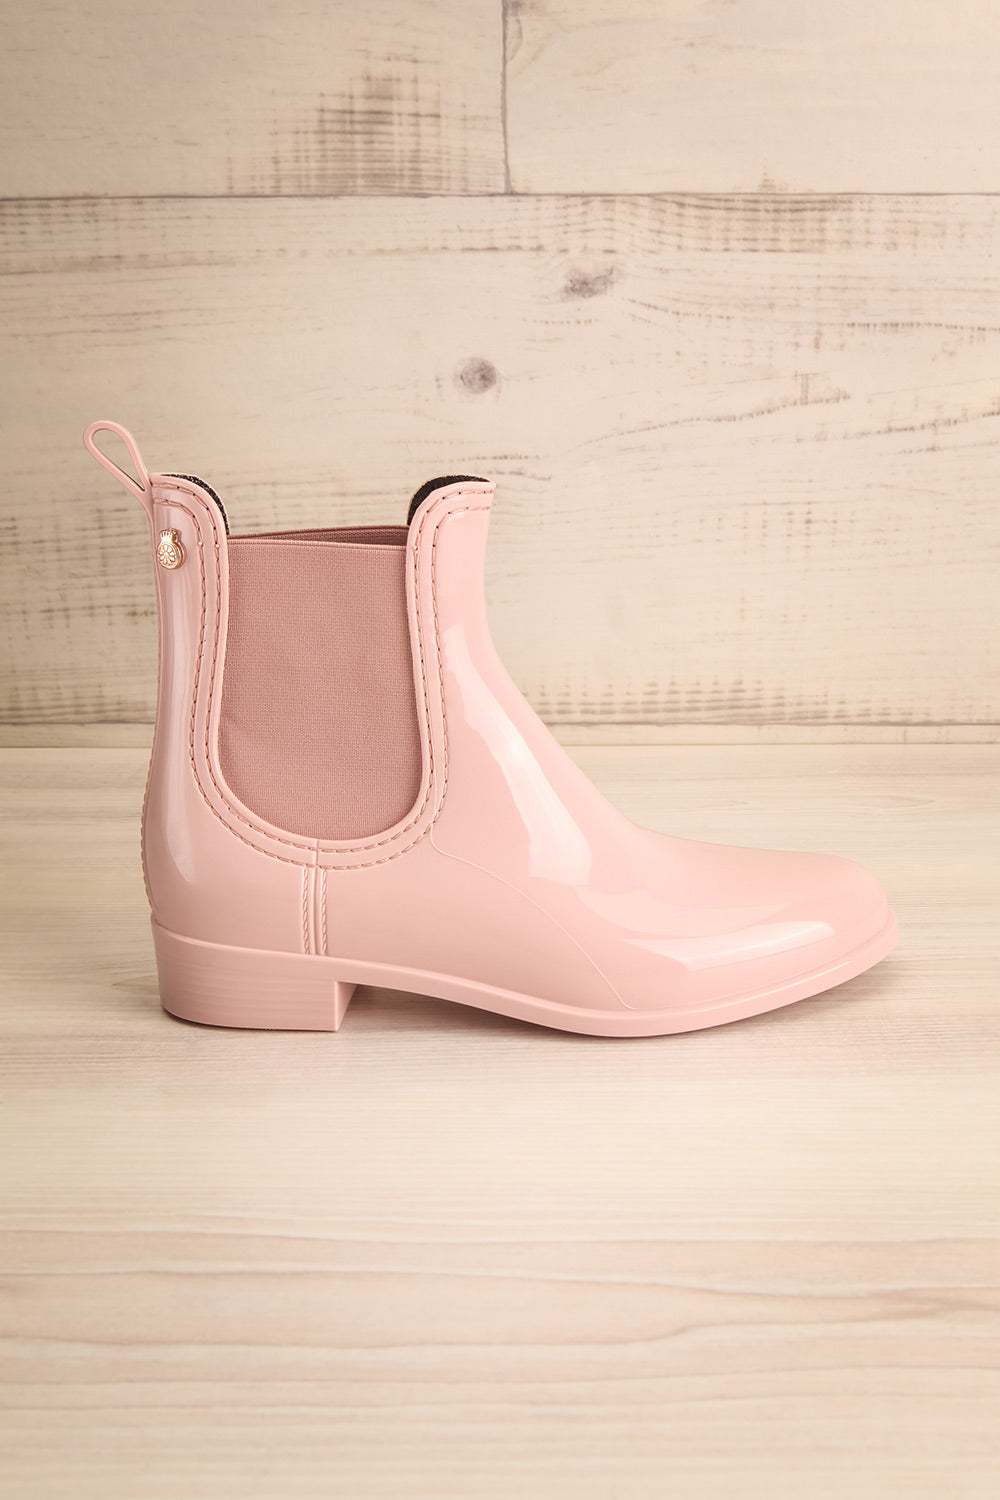 Chelmsford Pink Chelsea Rain Boots | La Petite Garçonne Chpt. 2 5